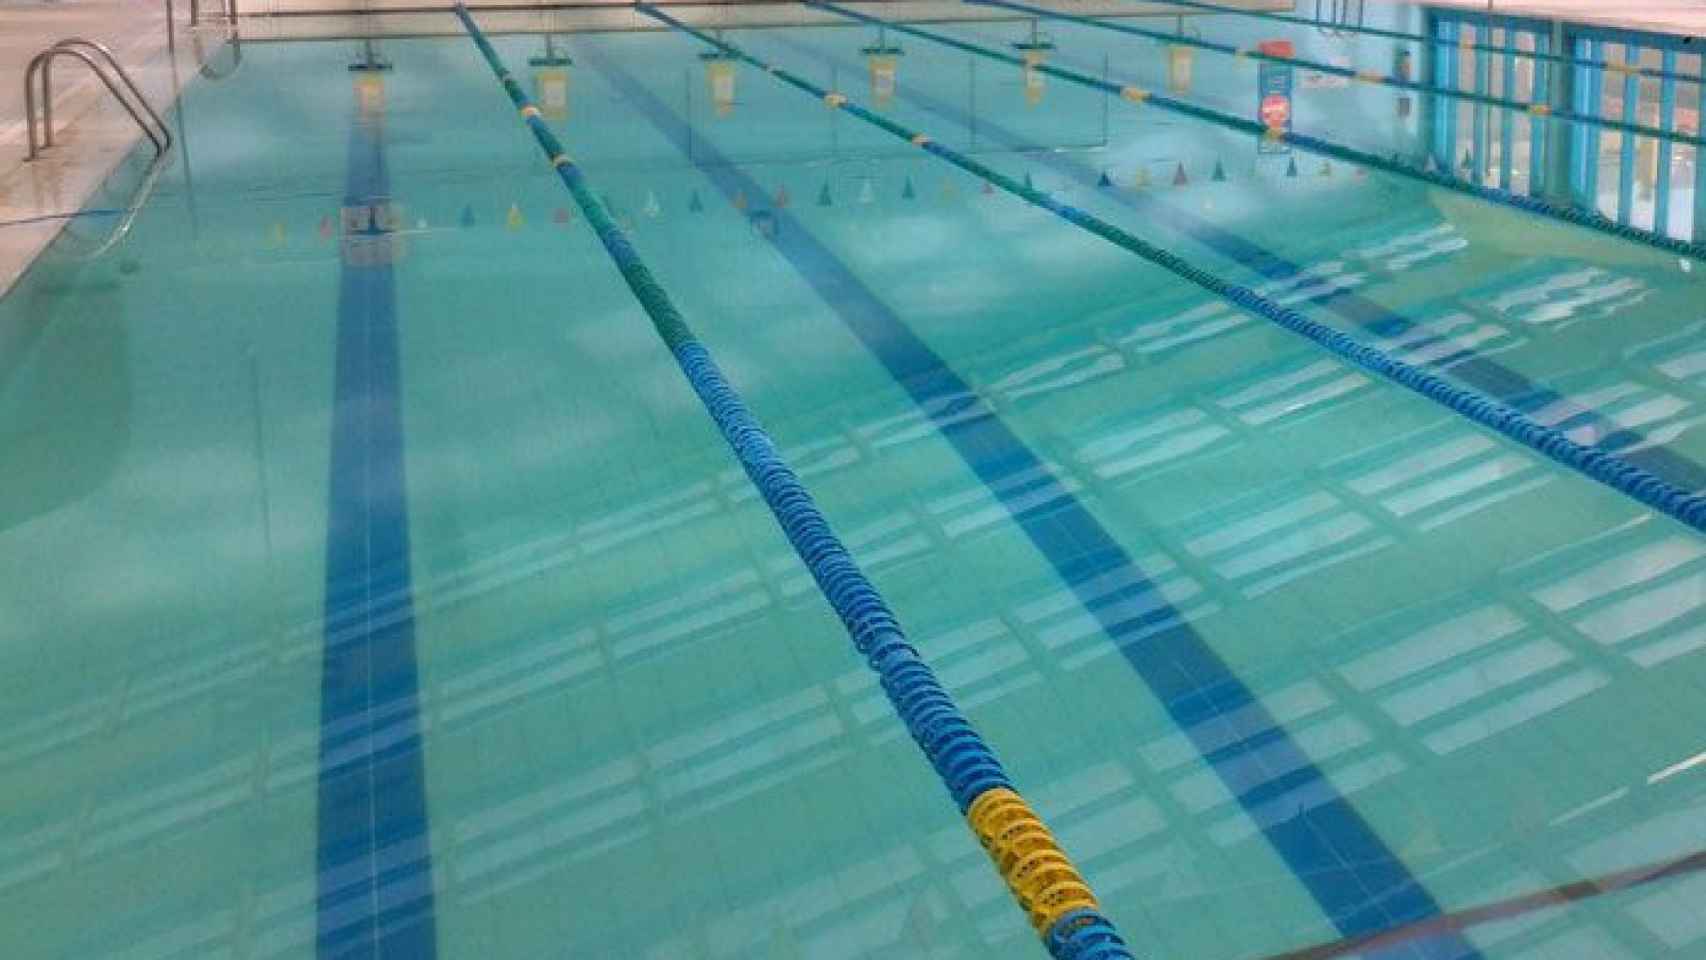 Imagen de una piscina climatizada